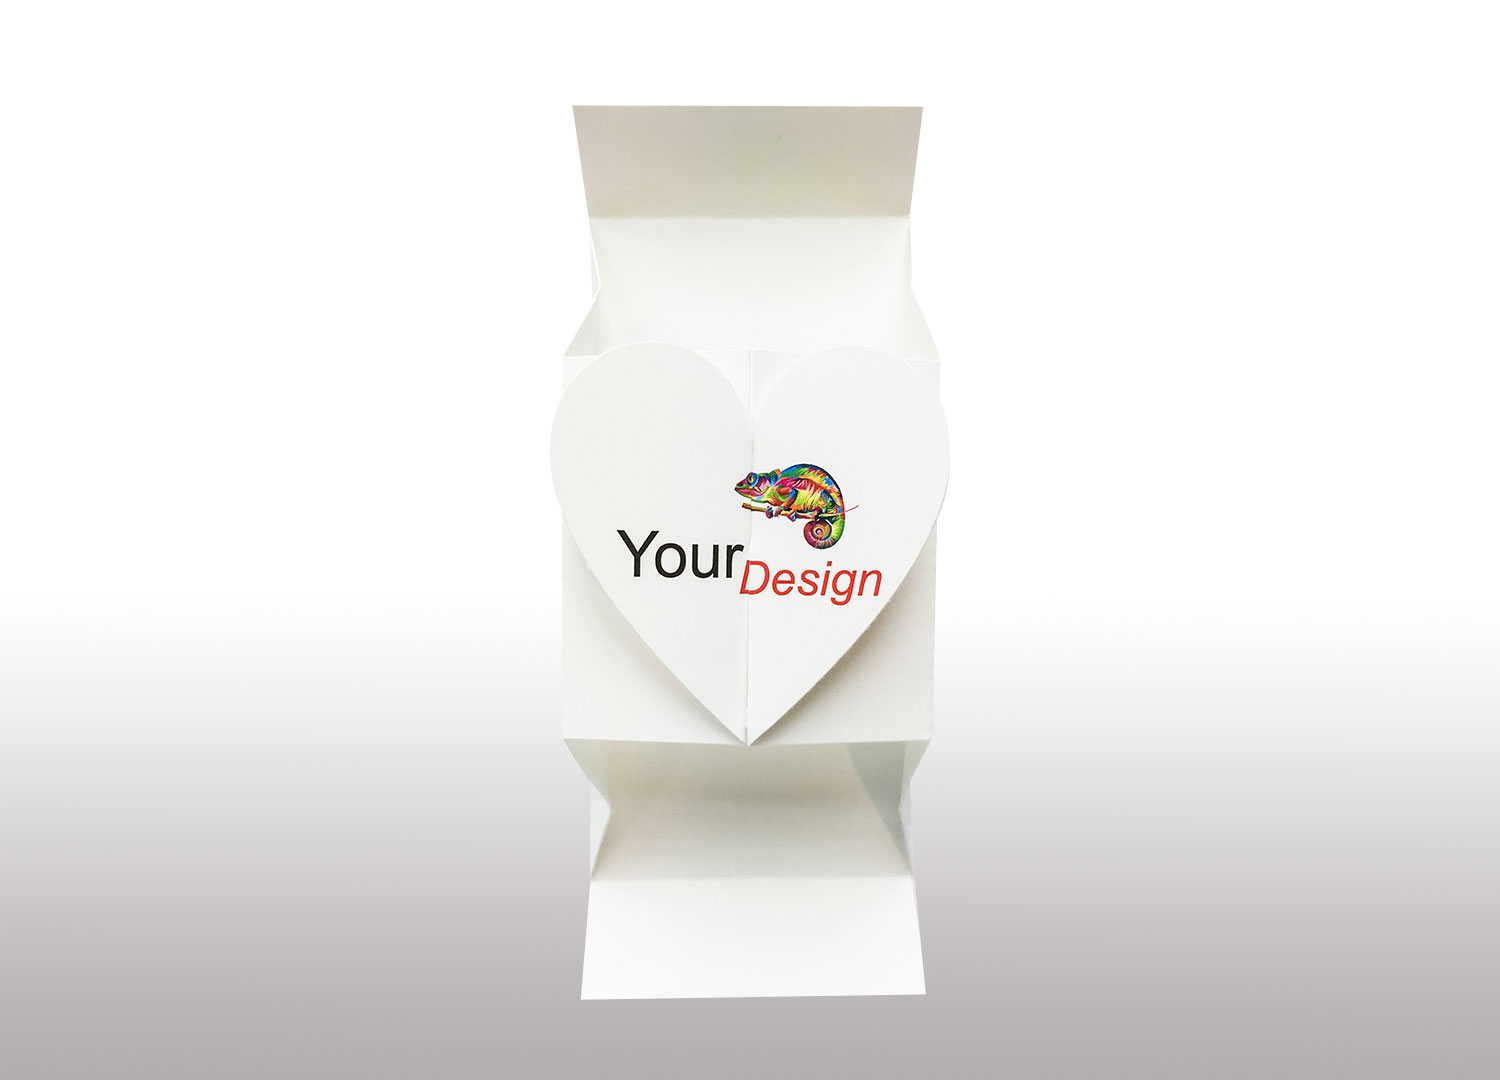 Kartonnen doosje met hartvorm, gepersonaliseerde opdruk. 